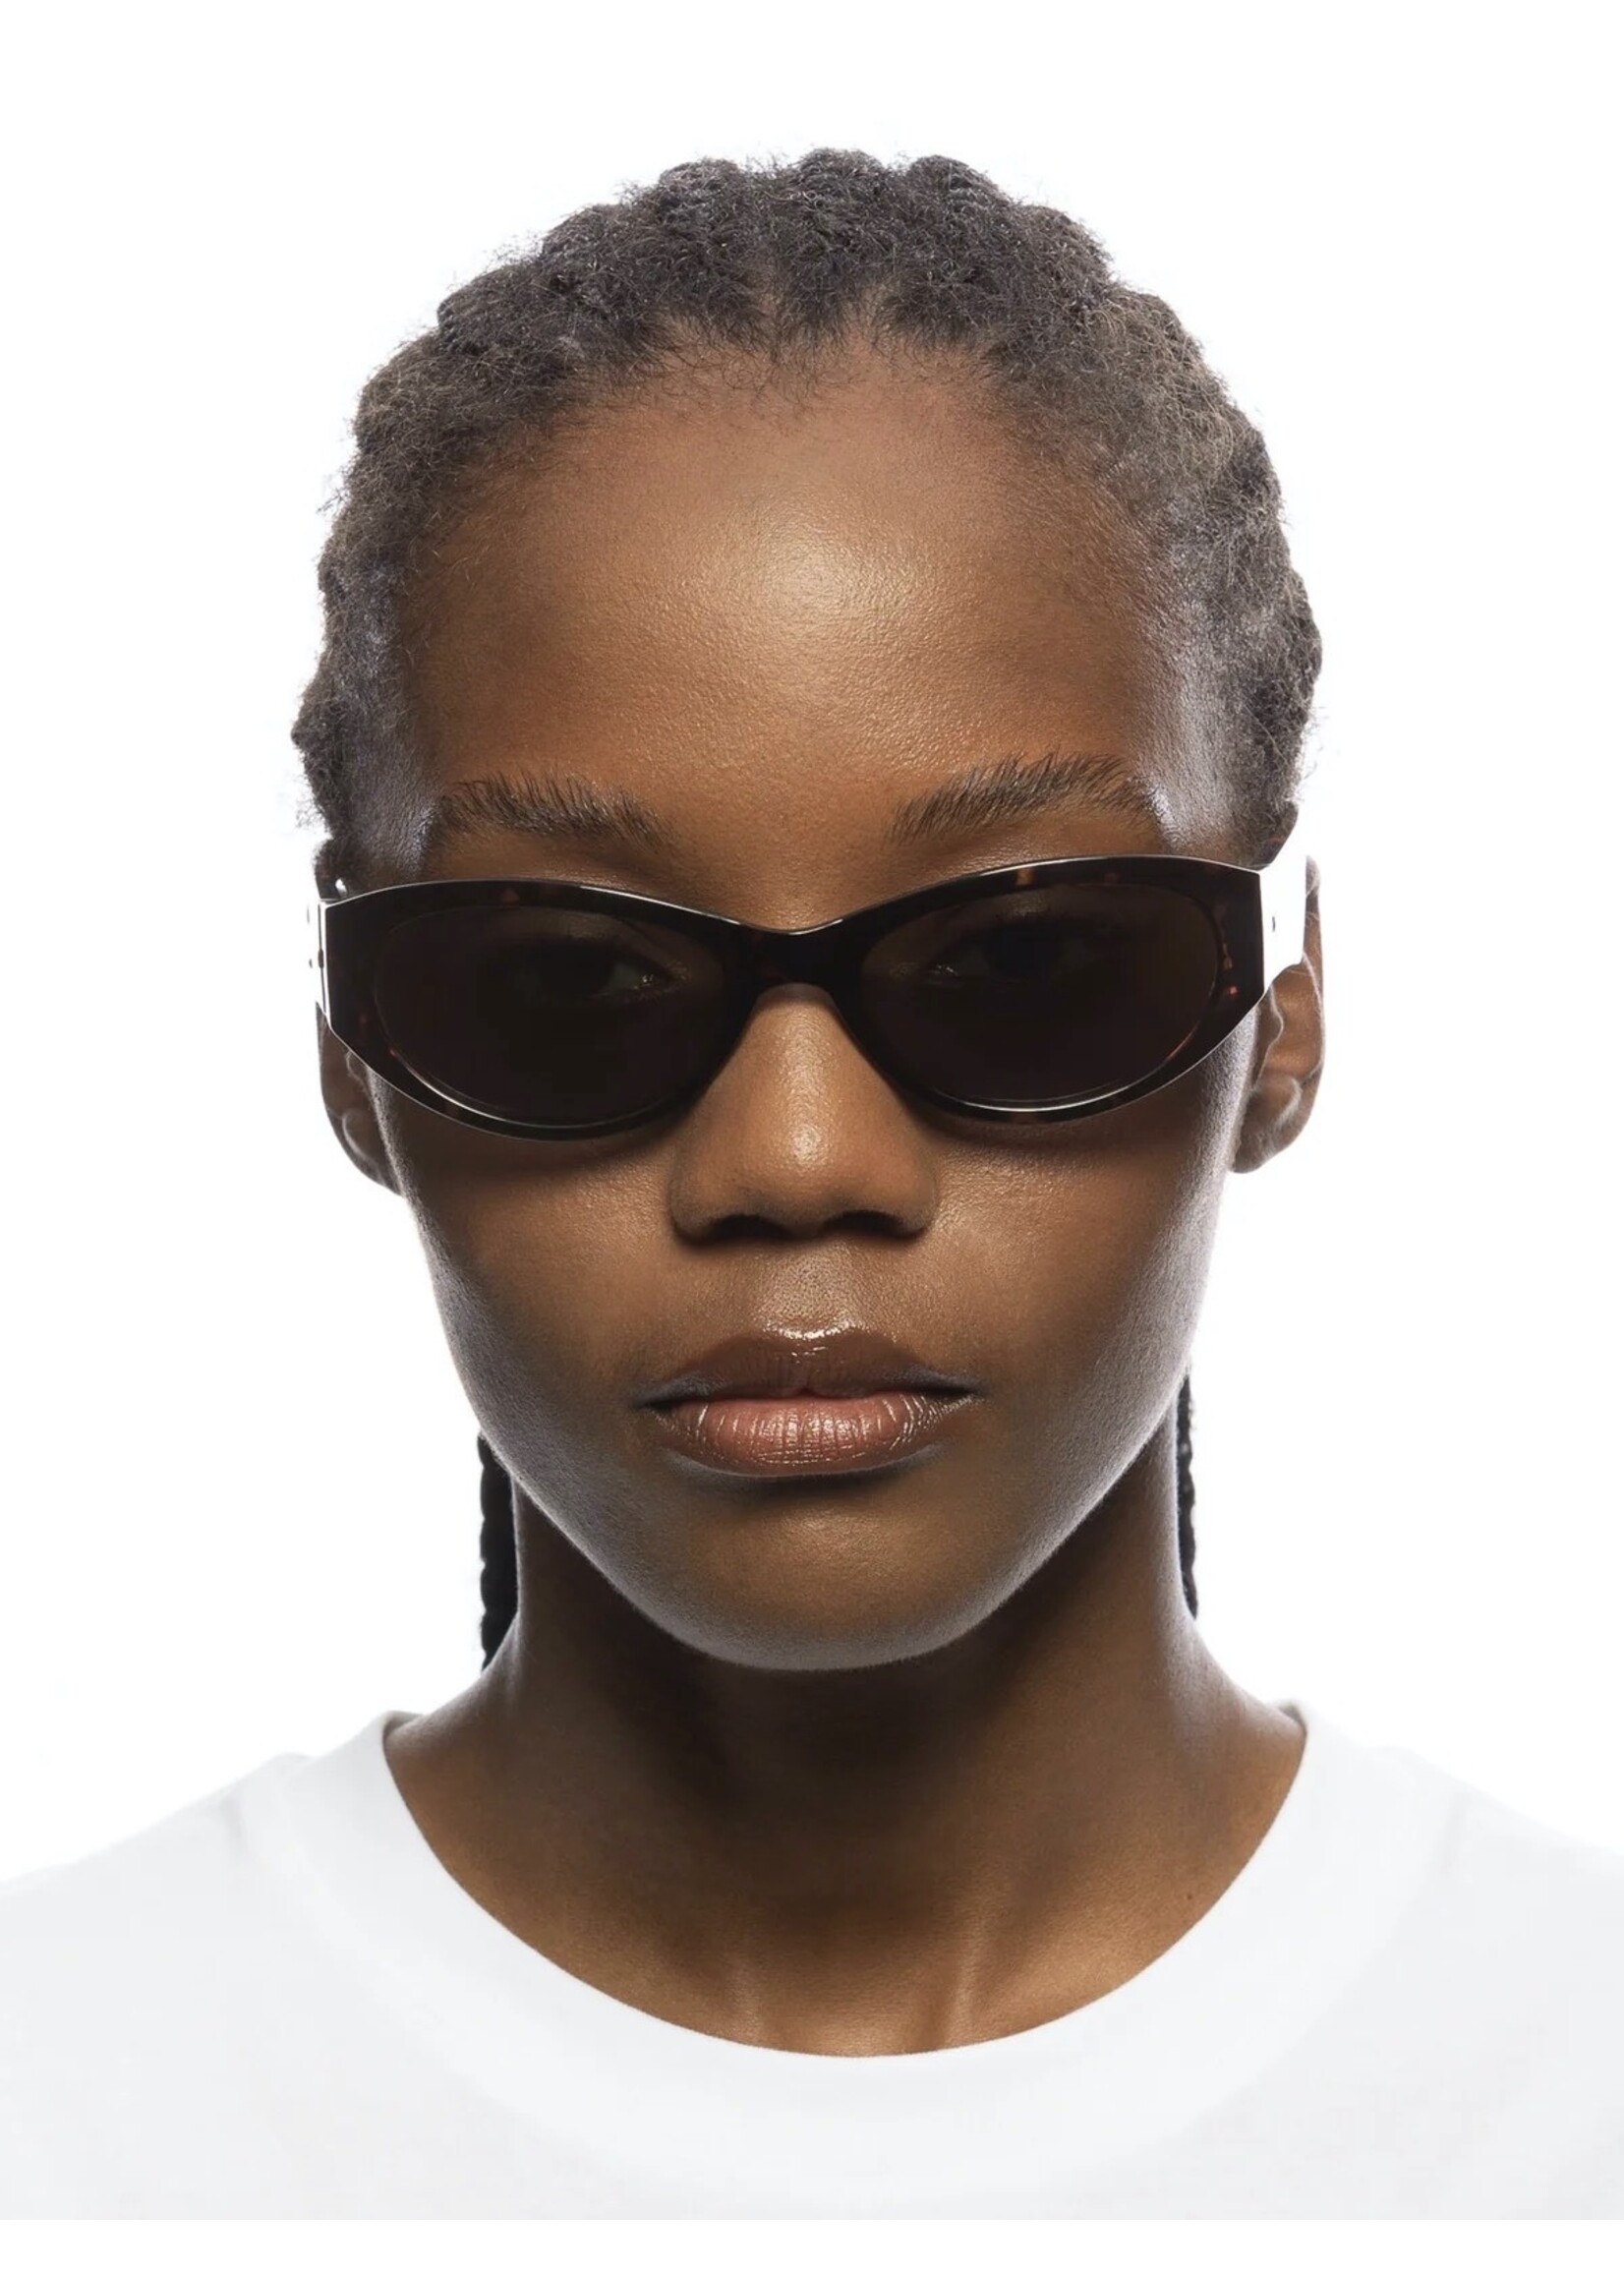 Le Specs Sunglasses "Polywrap" by LESPECS